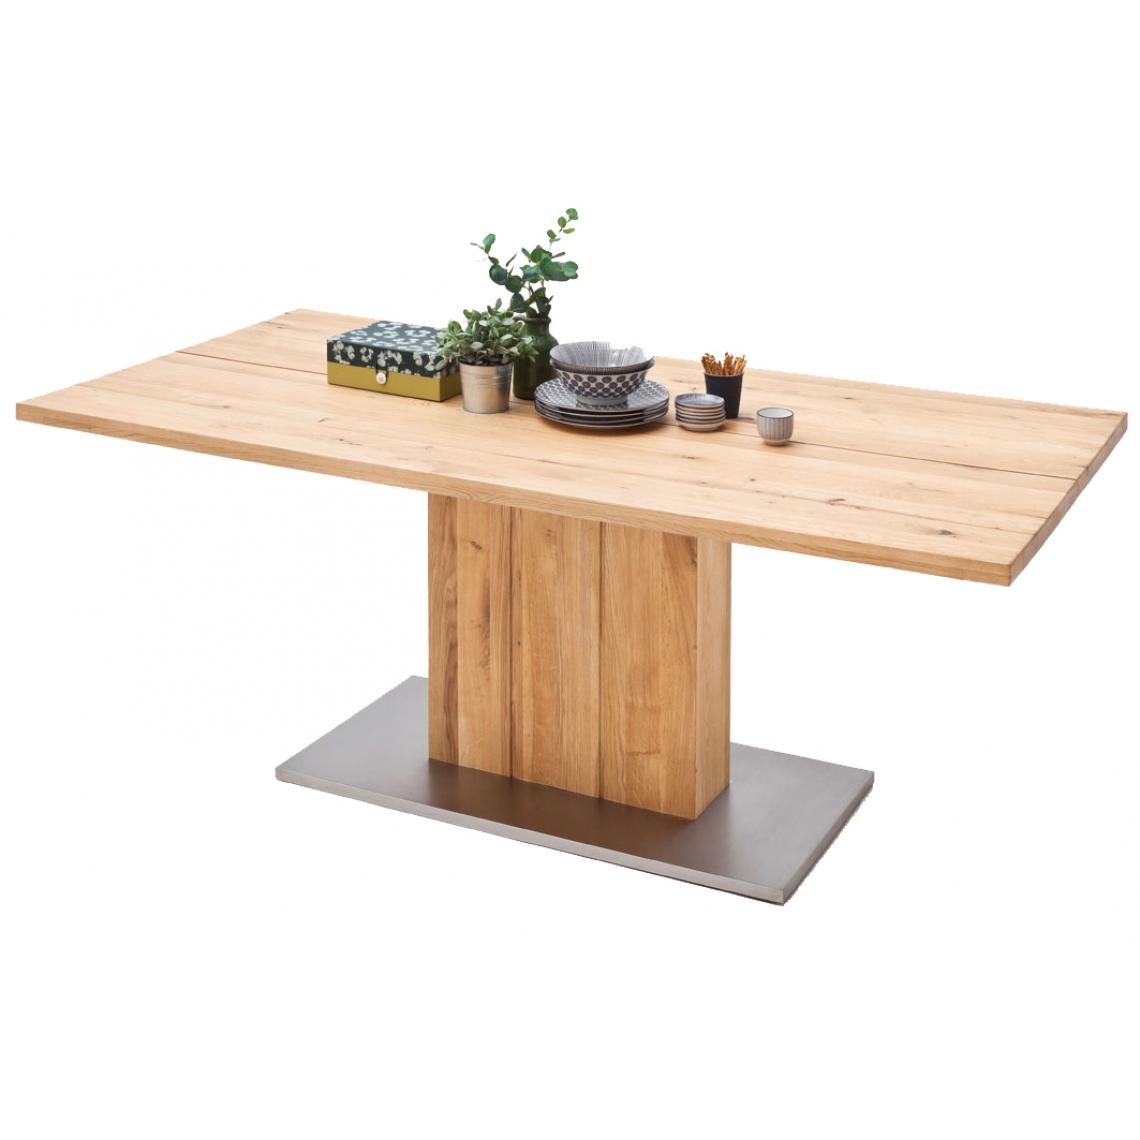 Pegane - Table à manger en chêne massif huilé avec dessus divisé - L220 x H77 x P100 cm - Tables à manger